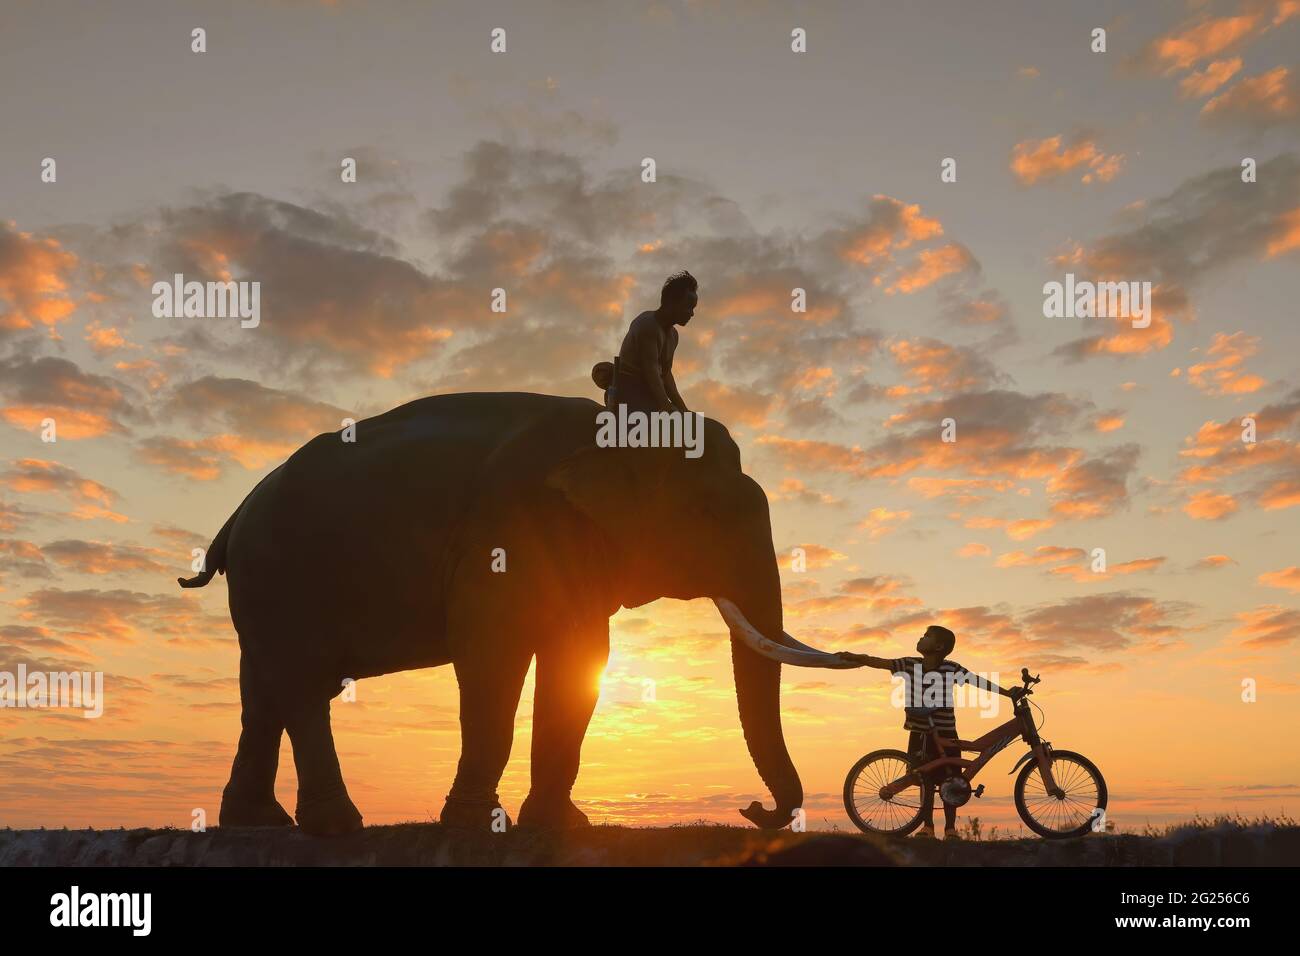 Silhouette eines Mahouts auf einem Elefanten bei Sonnenuntergang und eines Jungen auf einem Fahrrad, Thailand Stockfoto